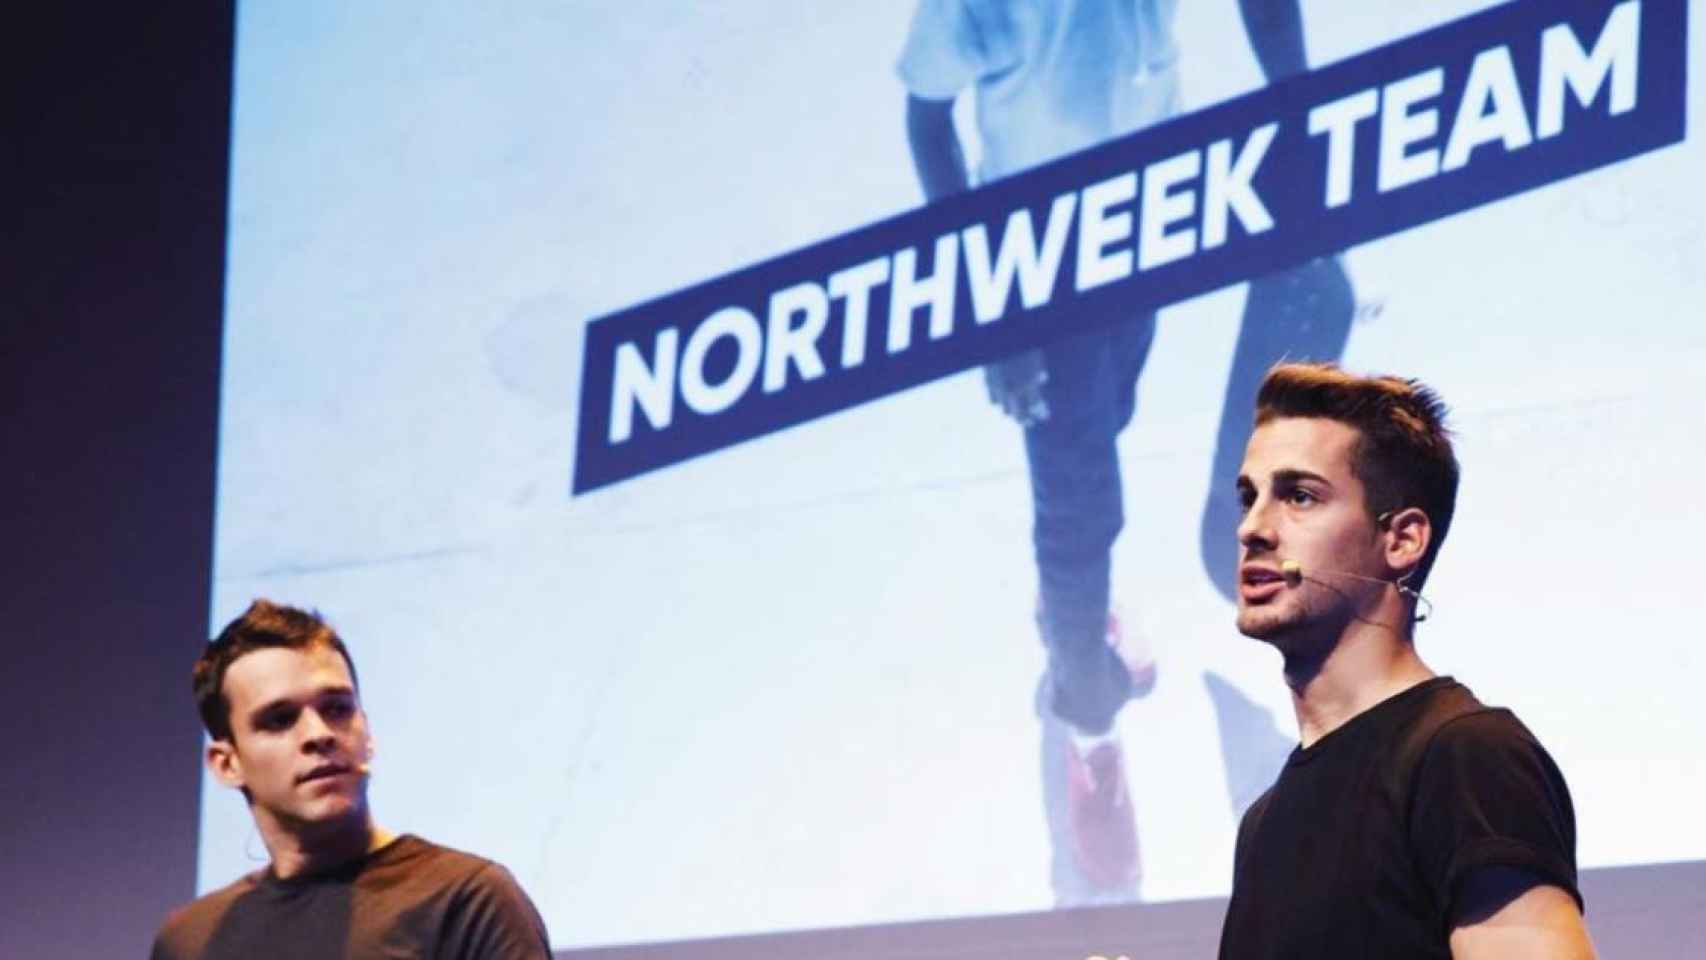 Héctor Rey y Álex Huertas, los dos emprendedores catalanes fundadores de Northweek